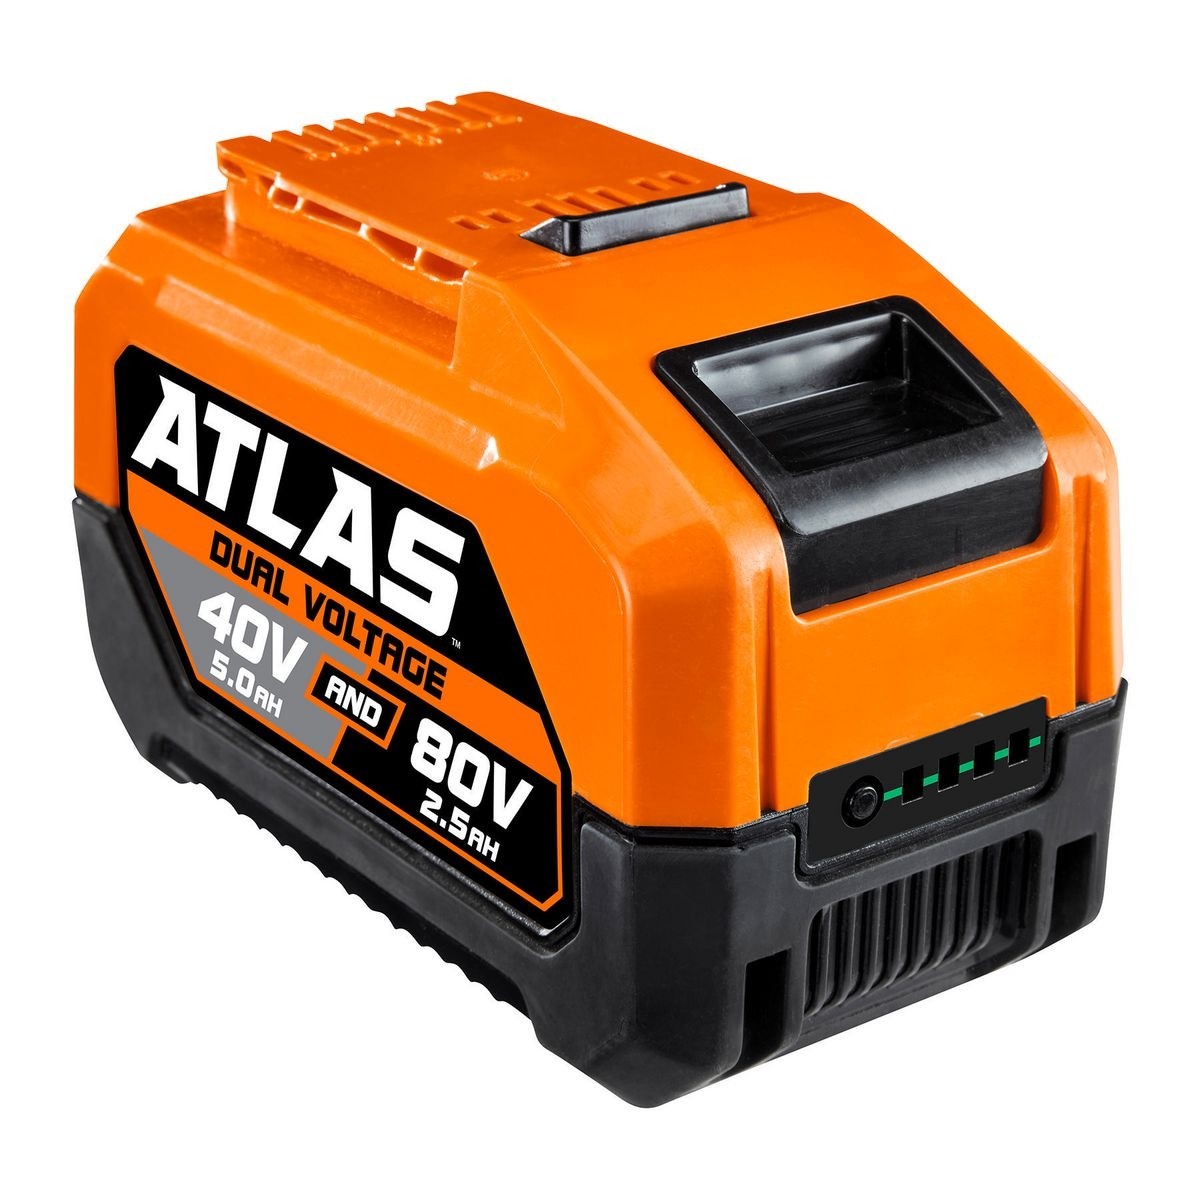 ATLAS 80v 2.5 Ah 40v 5.0Ah Lithium-Ion Battery – Item 57014 – Harbor